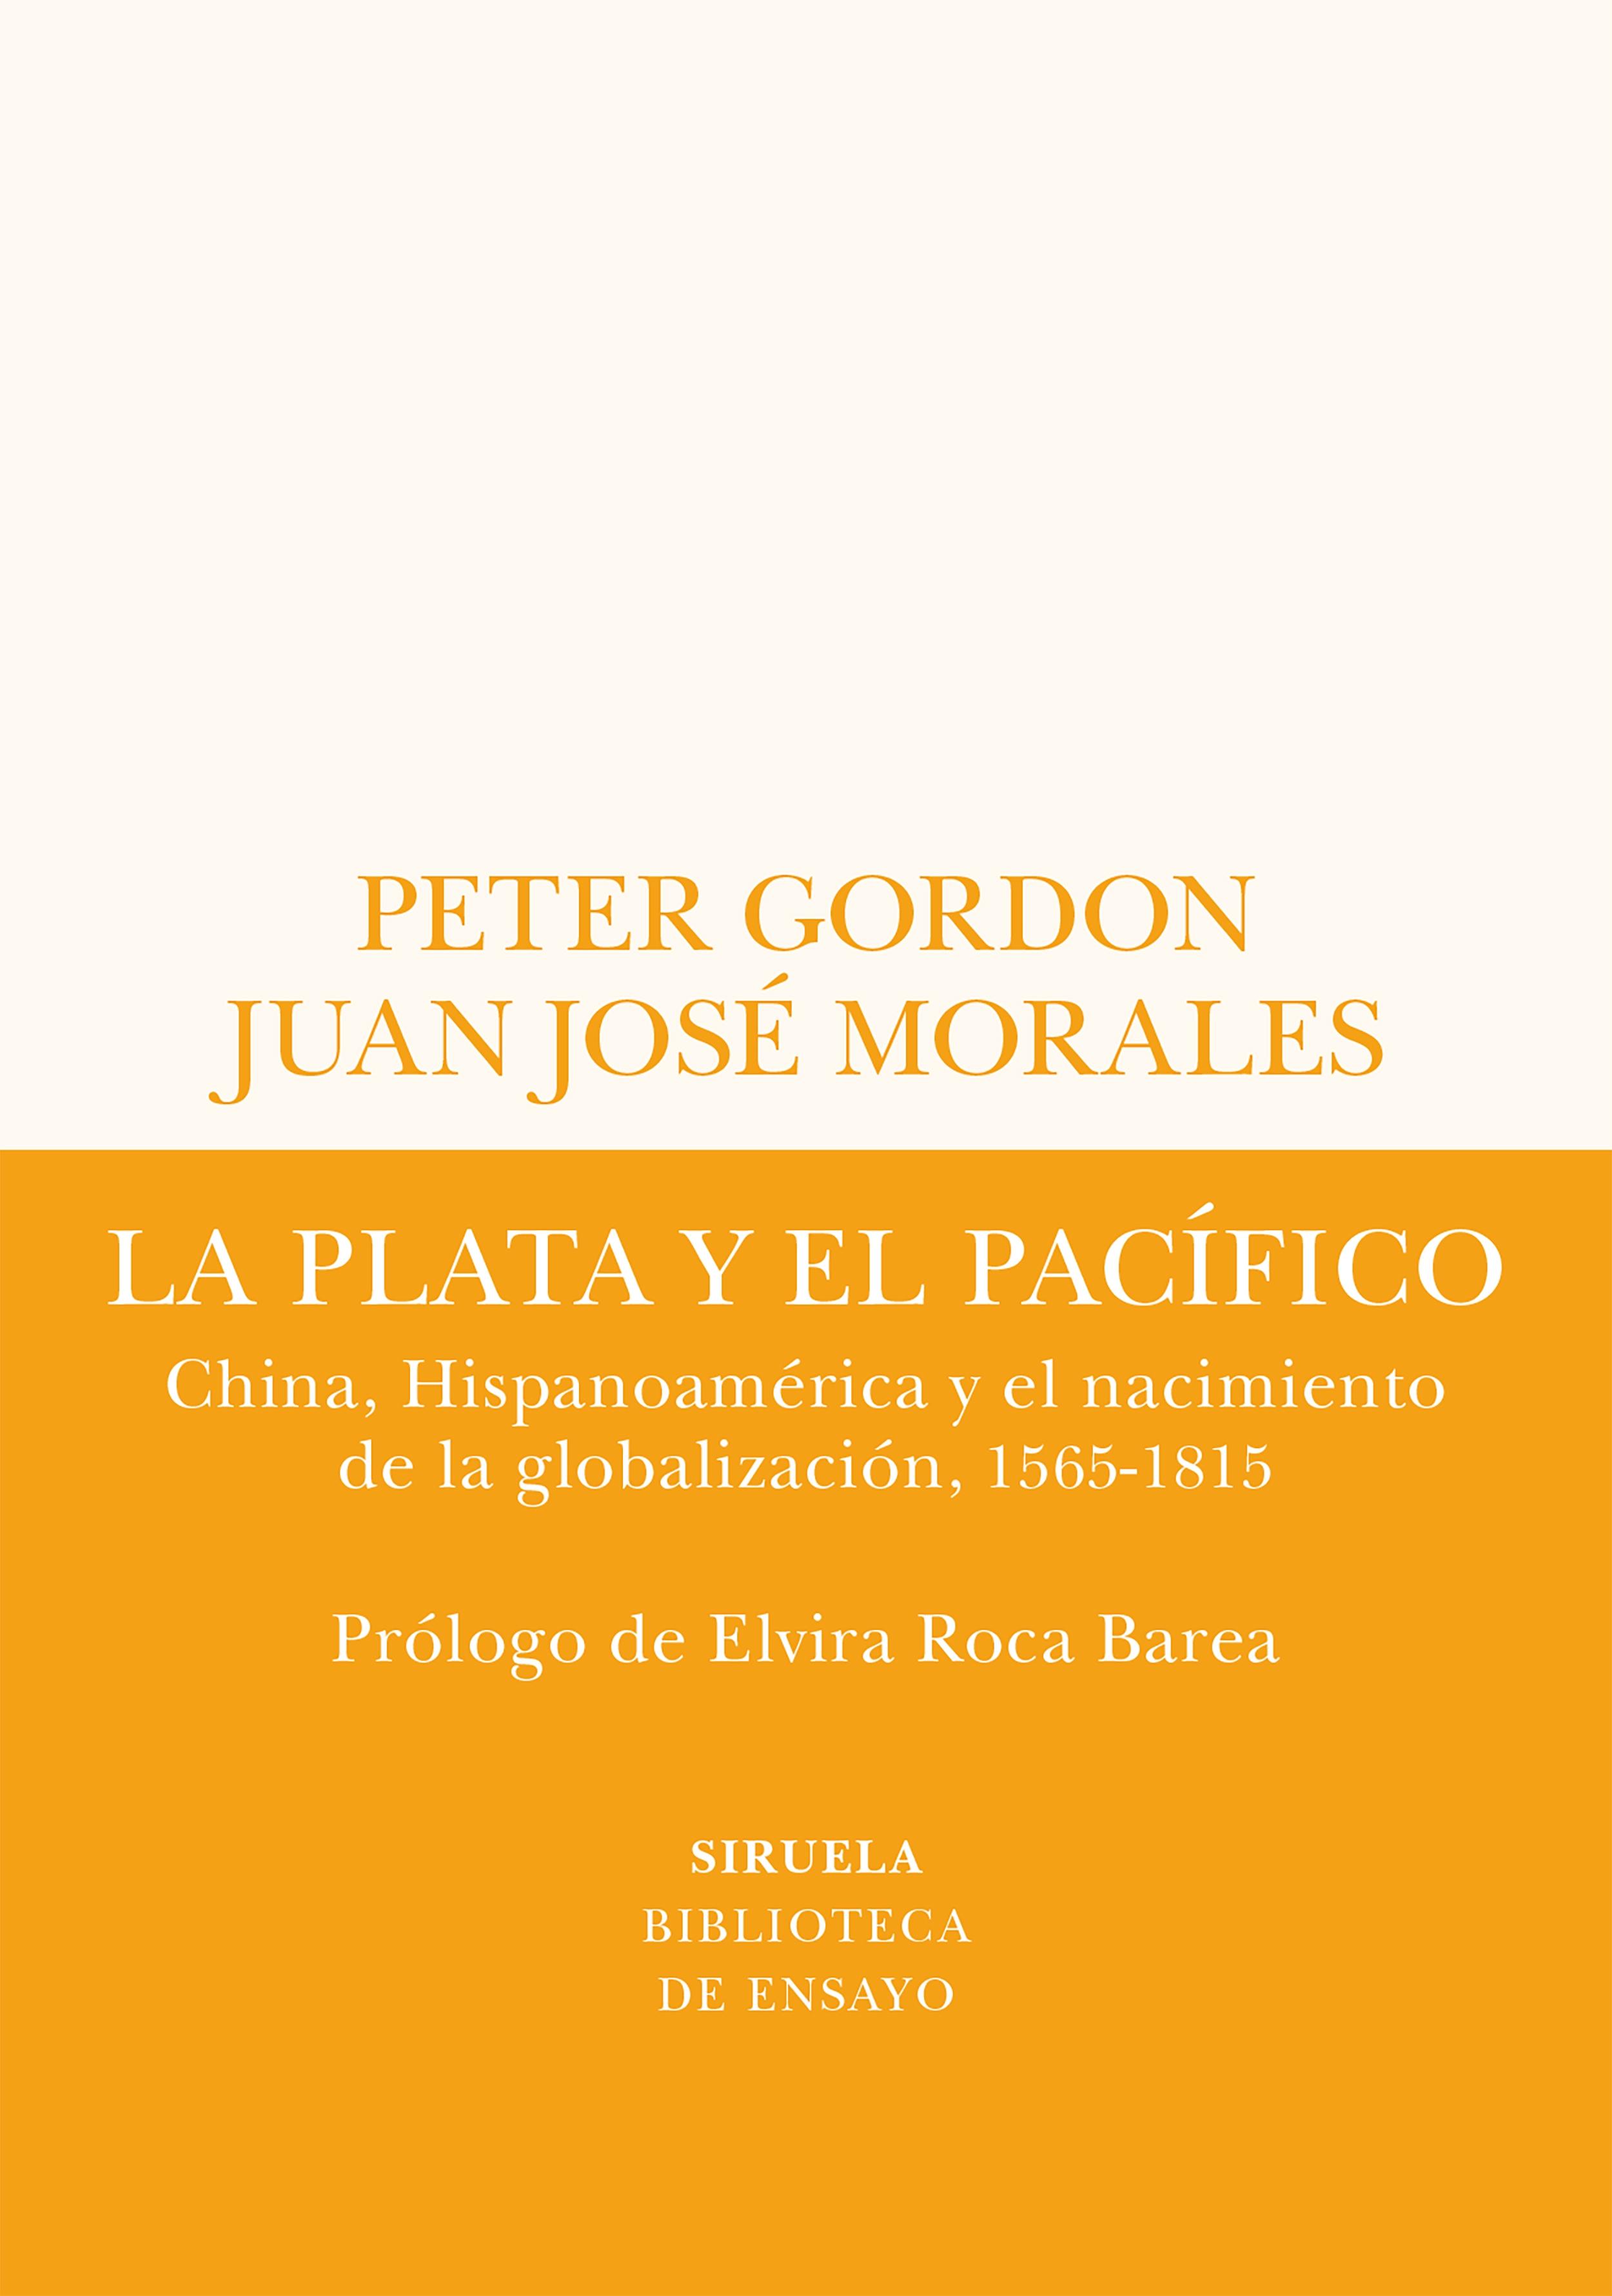 La Plata y el Pacífico "China, Hispanoamérica y el Nacimiento de la Globalización, 1565-1815"